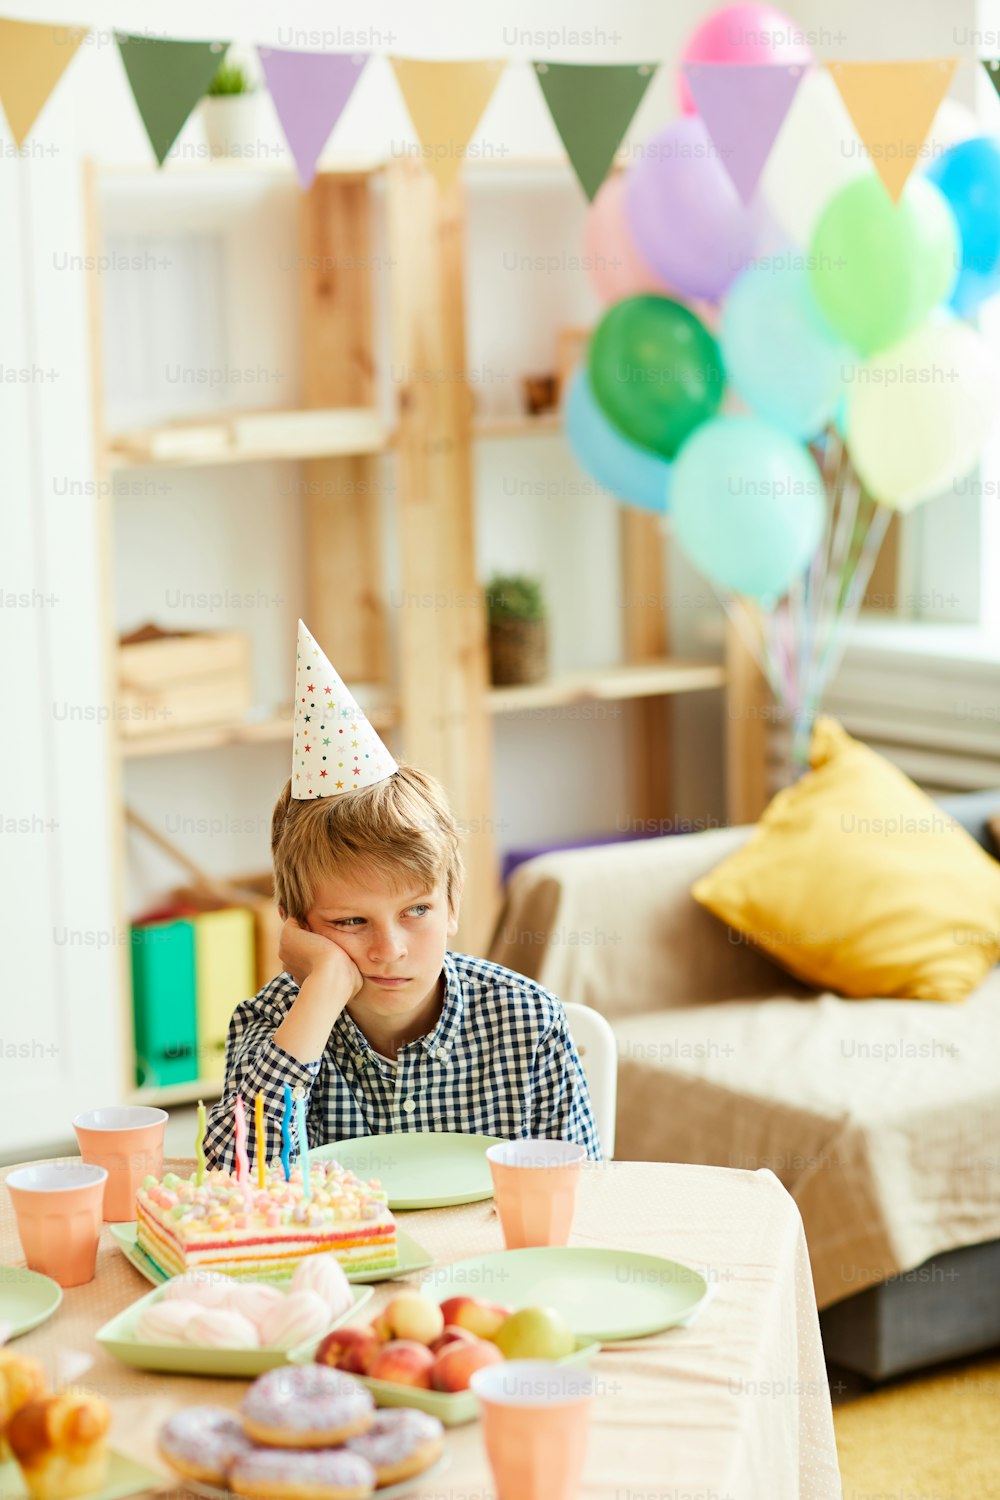 誕生日パーティー中に一人でテーブルに座っている悲しい男の子のポートレート、コピー用スペース